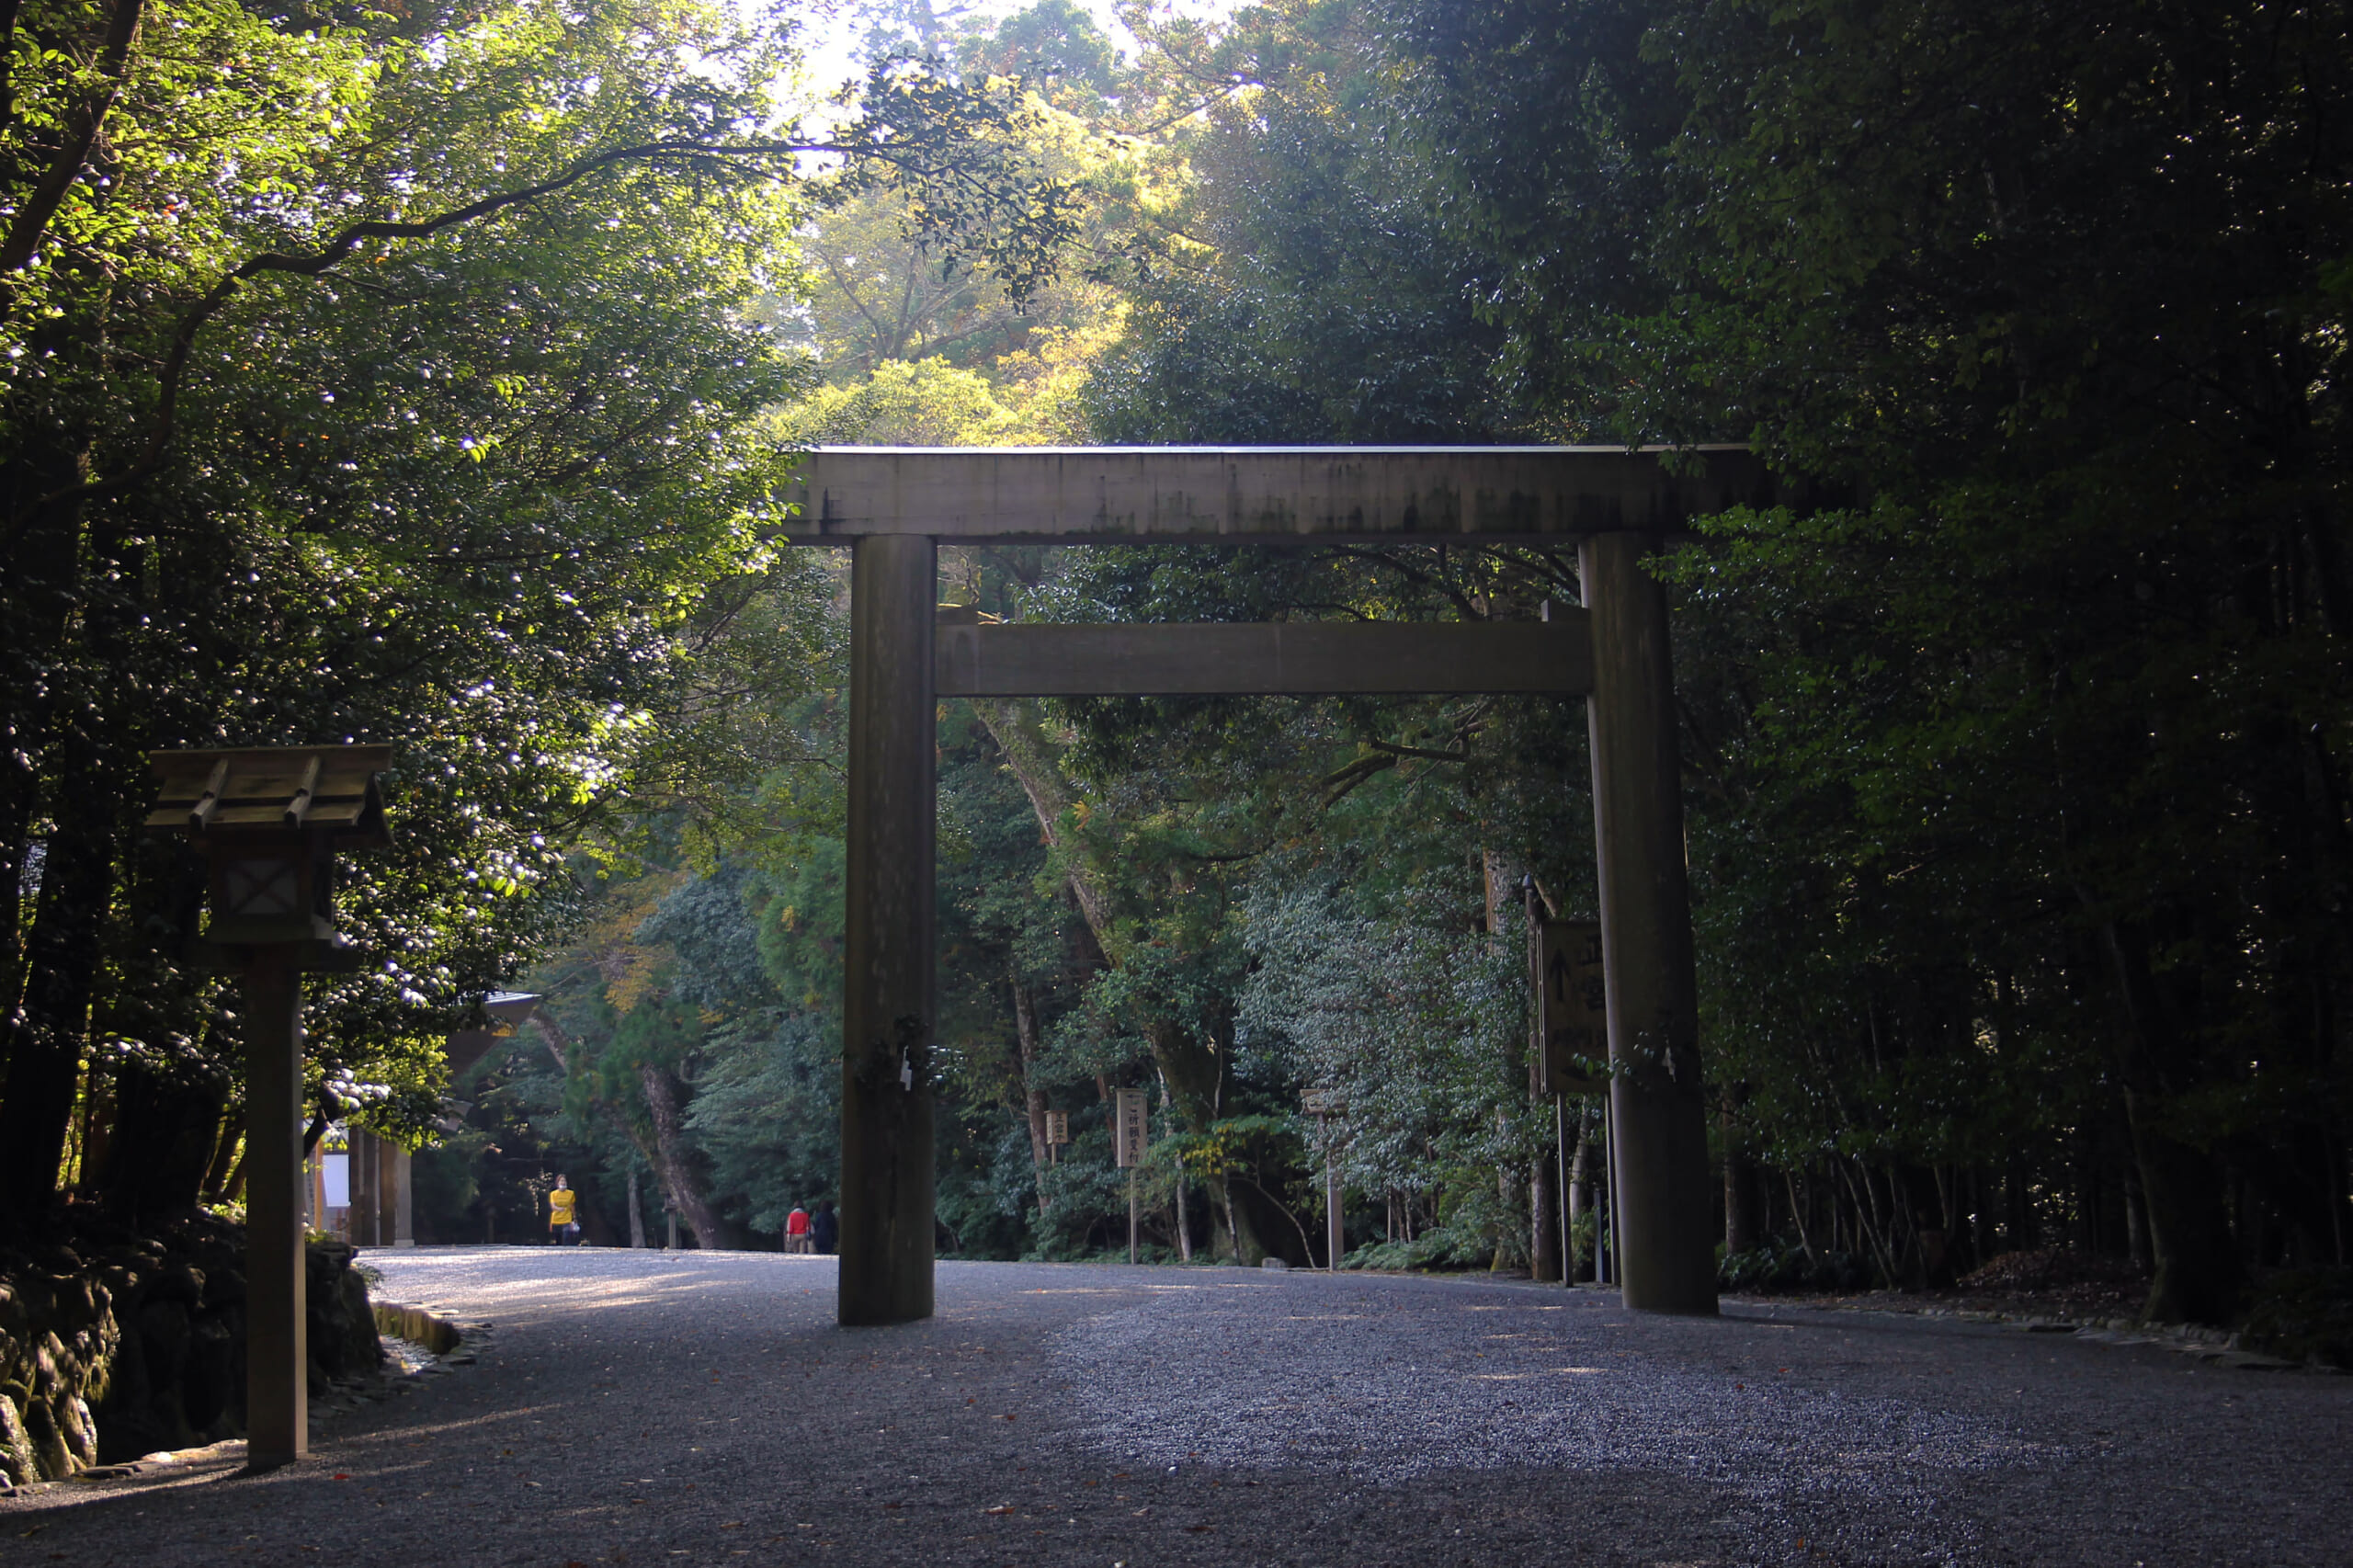 Ise Jingu: The Most Sacred Shrine in Japan